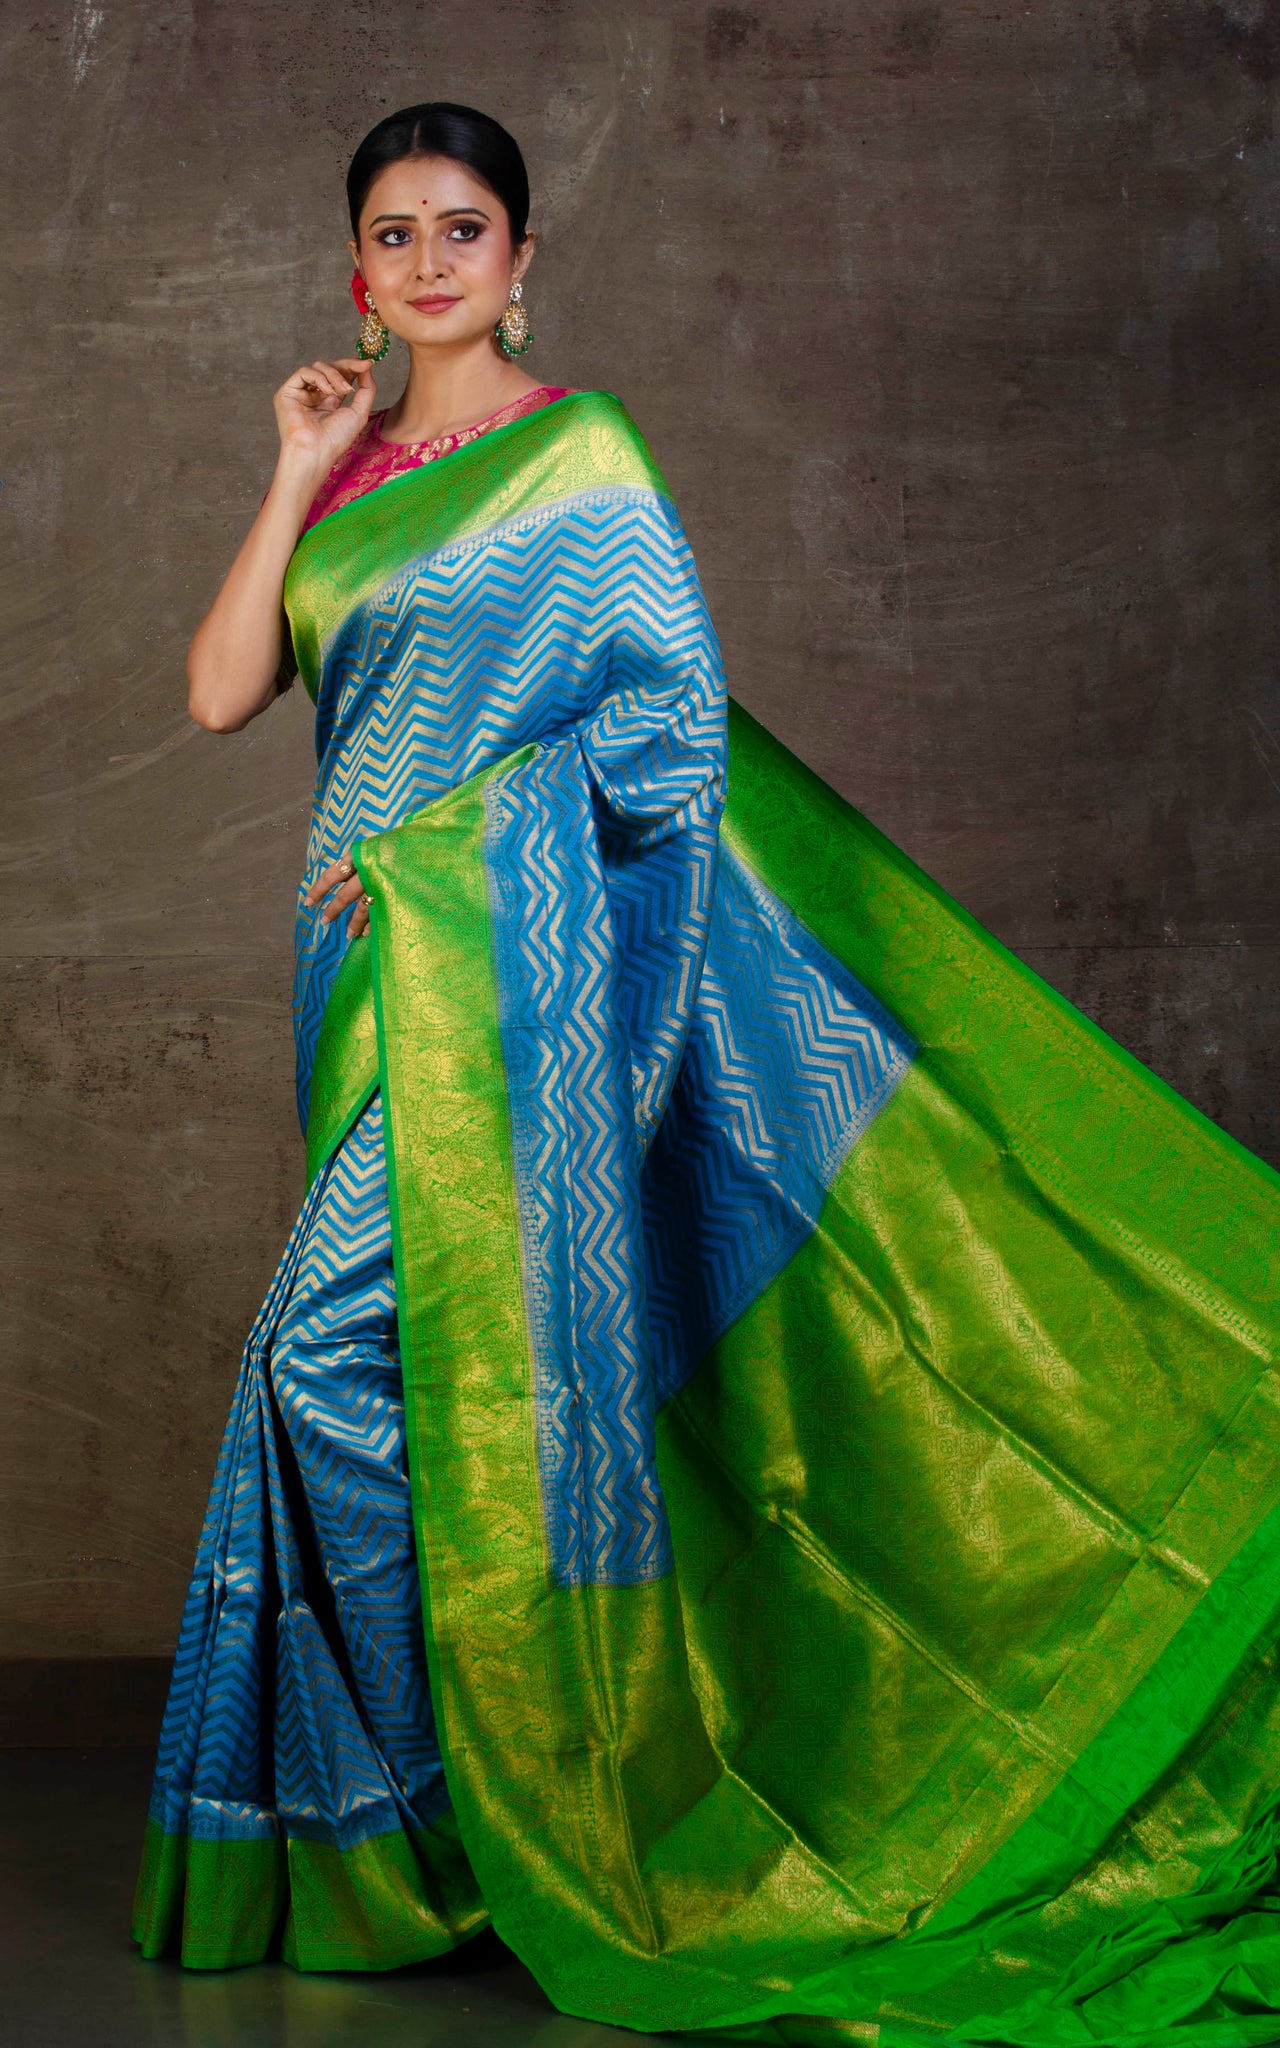 Buy Julahaa Women's Katan Silk Saree with Blouse (Blue) at Amazon.in